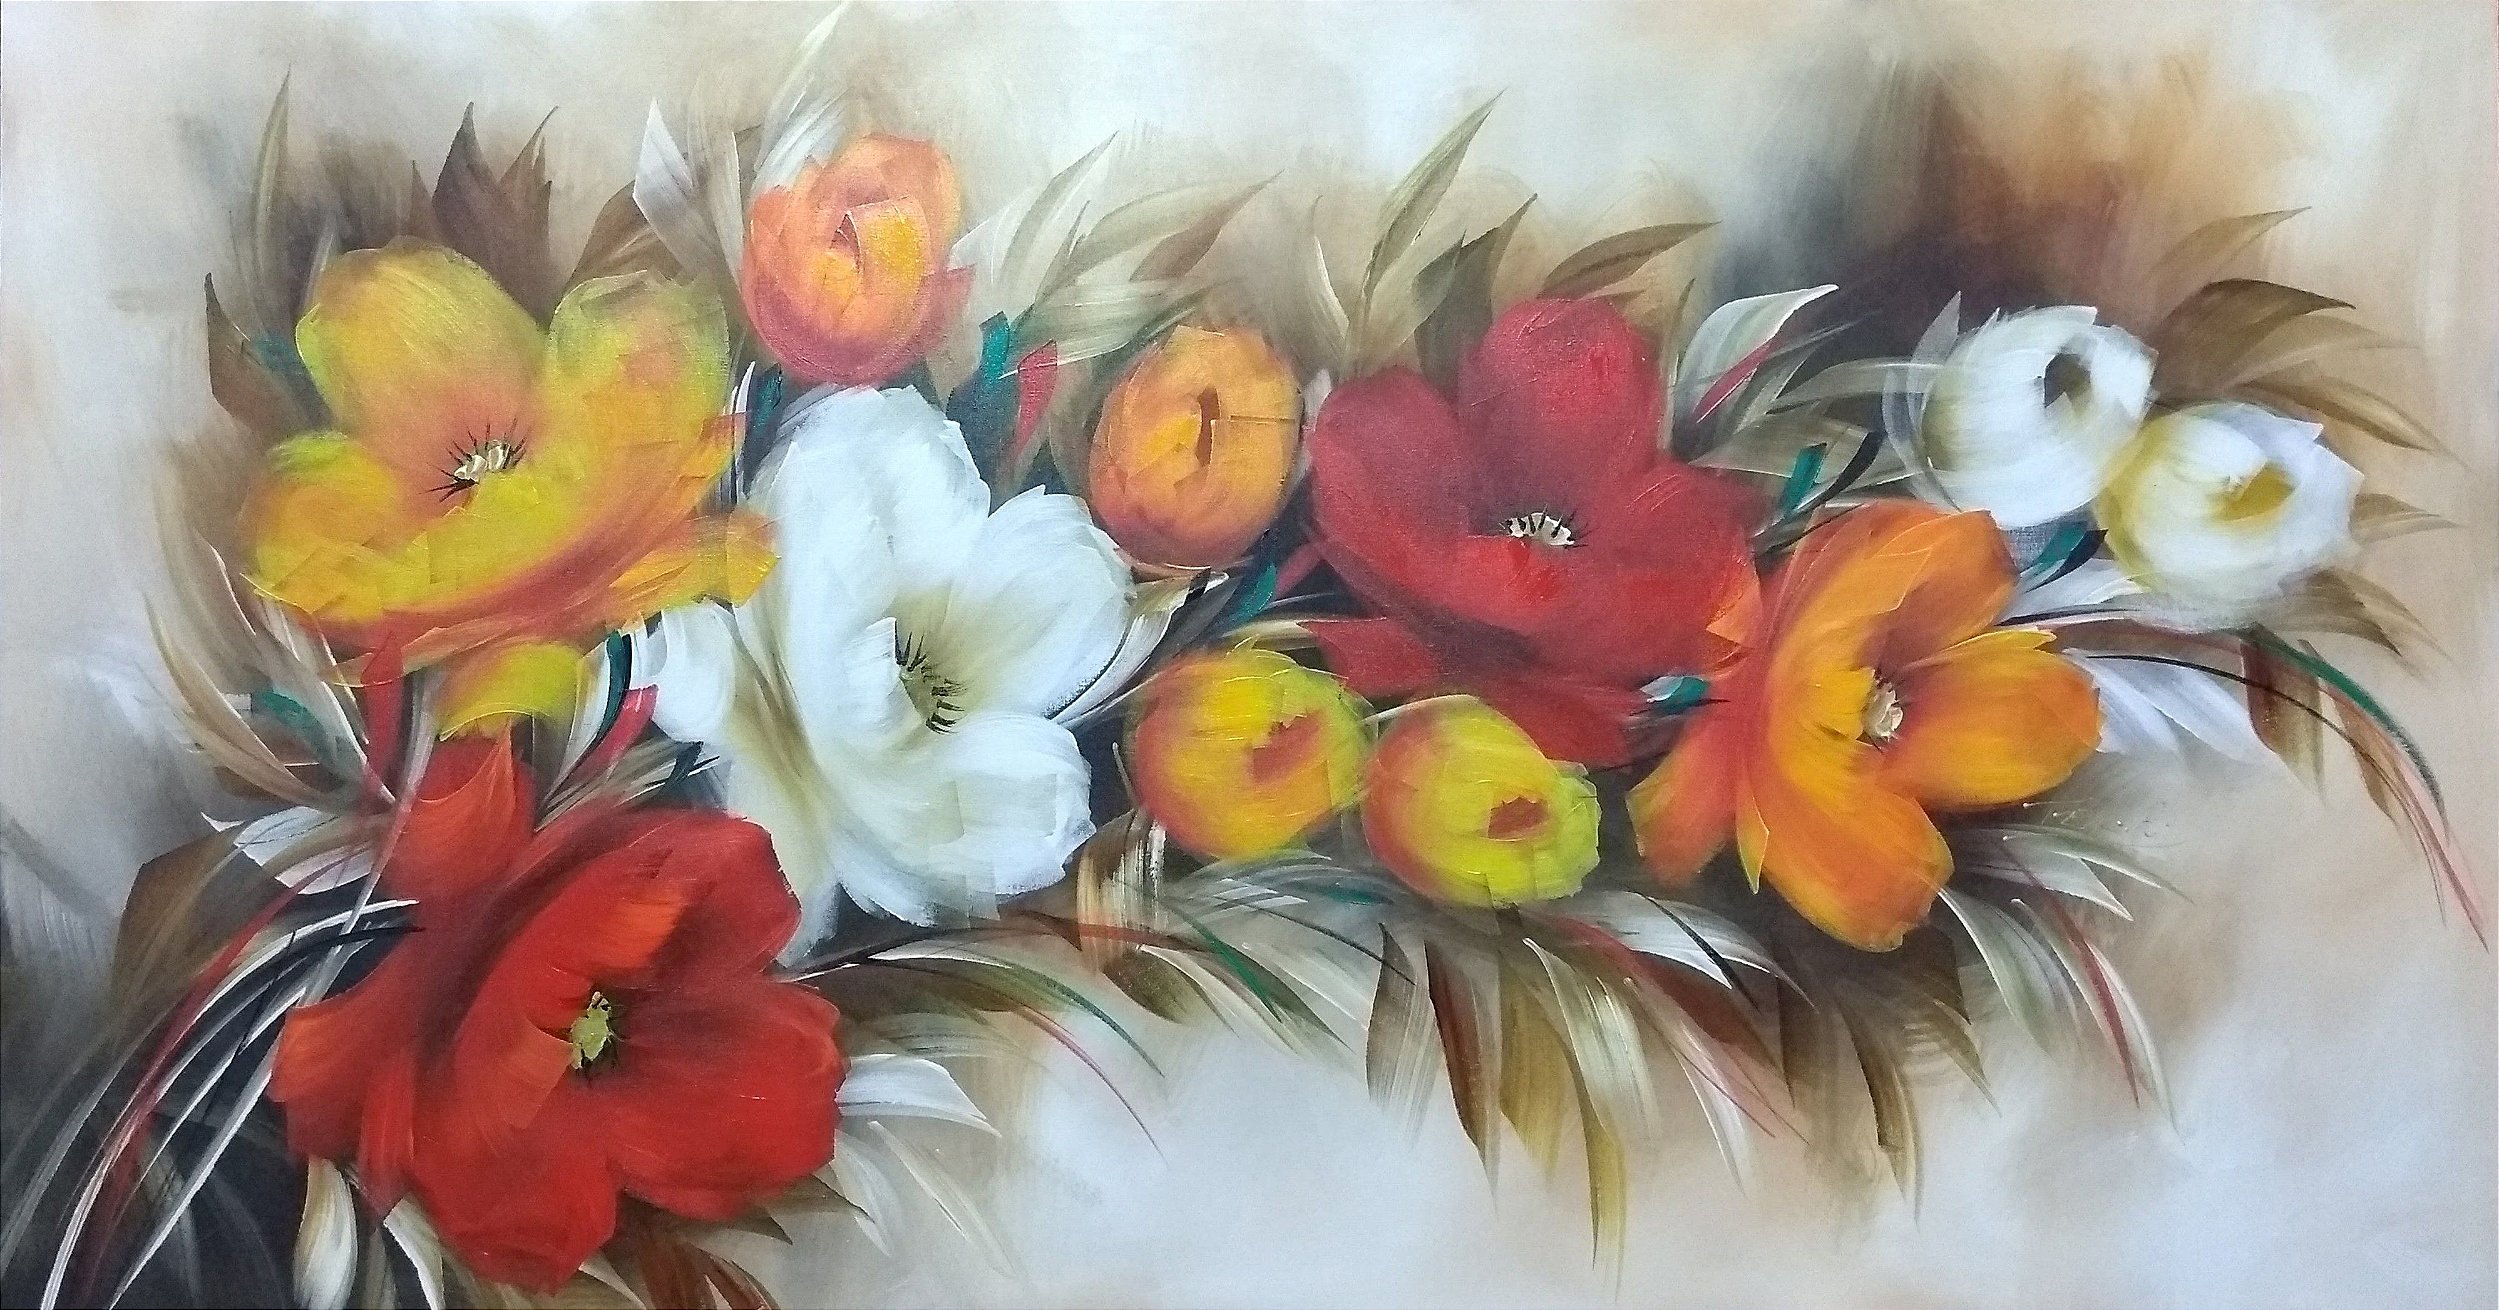 Pintura\Quadro\ Tela Floral com papoulas e tulipas em vermelho, branco -  Fer Amantéa Galeria de Artes